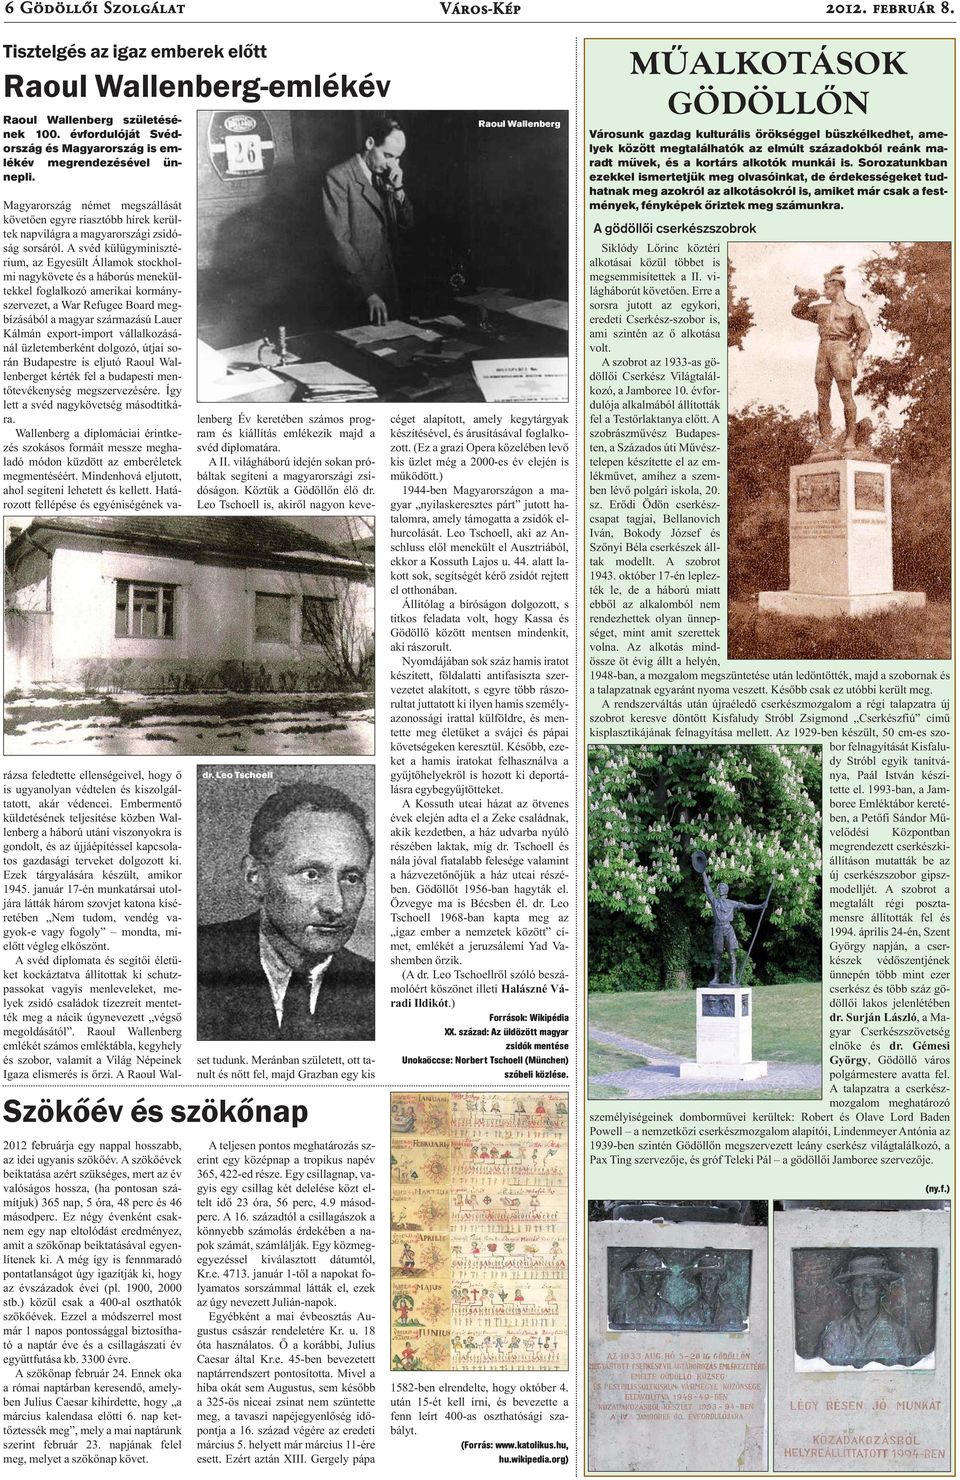 Leo Tschoell Magyarország német megszállását követően egyre riasztóbb hírek kerültek napvilágra a magyarországi zsidóság sorsáról.